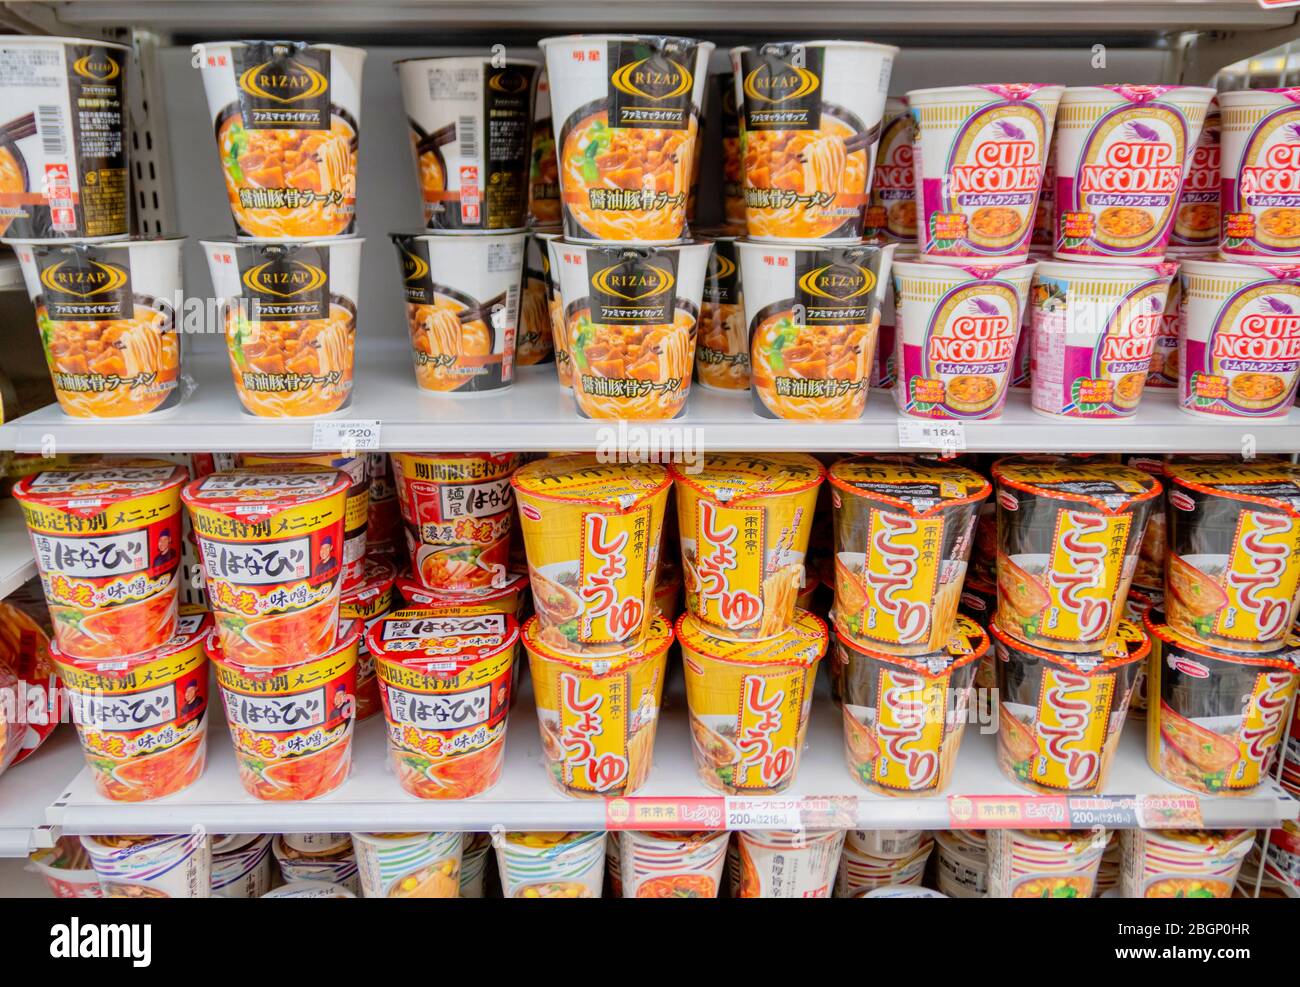 Molti stili di tazze di noodle giapponesi sugli scaffali in Mart di famiglia con il loro prezzo in Yen giapponese. Tokyo, Giappone febbraio 7,2020 Foto Stock